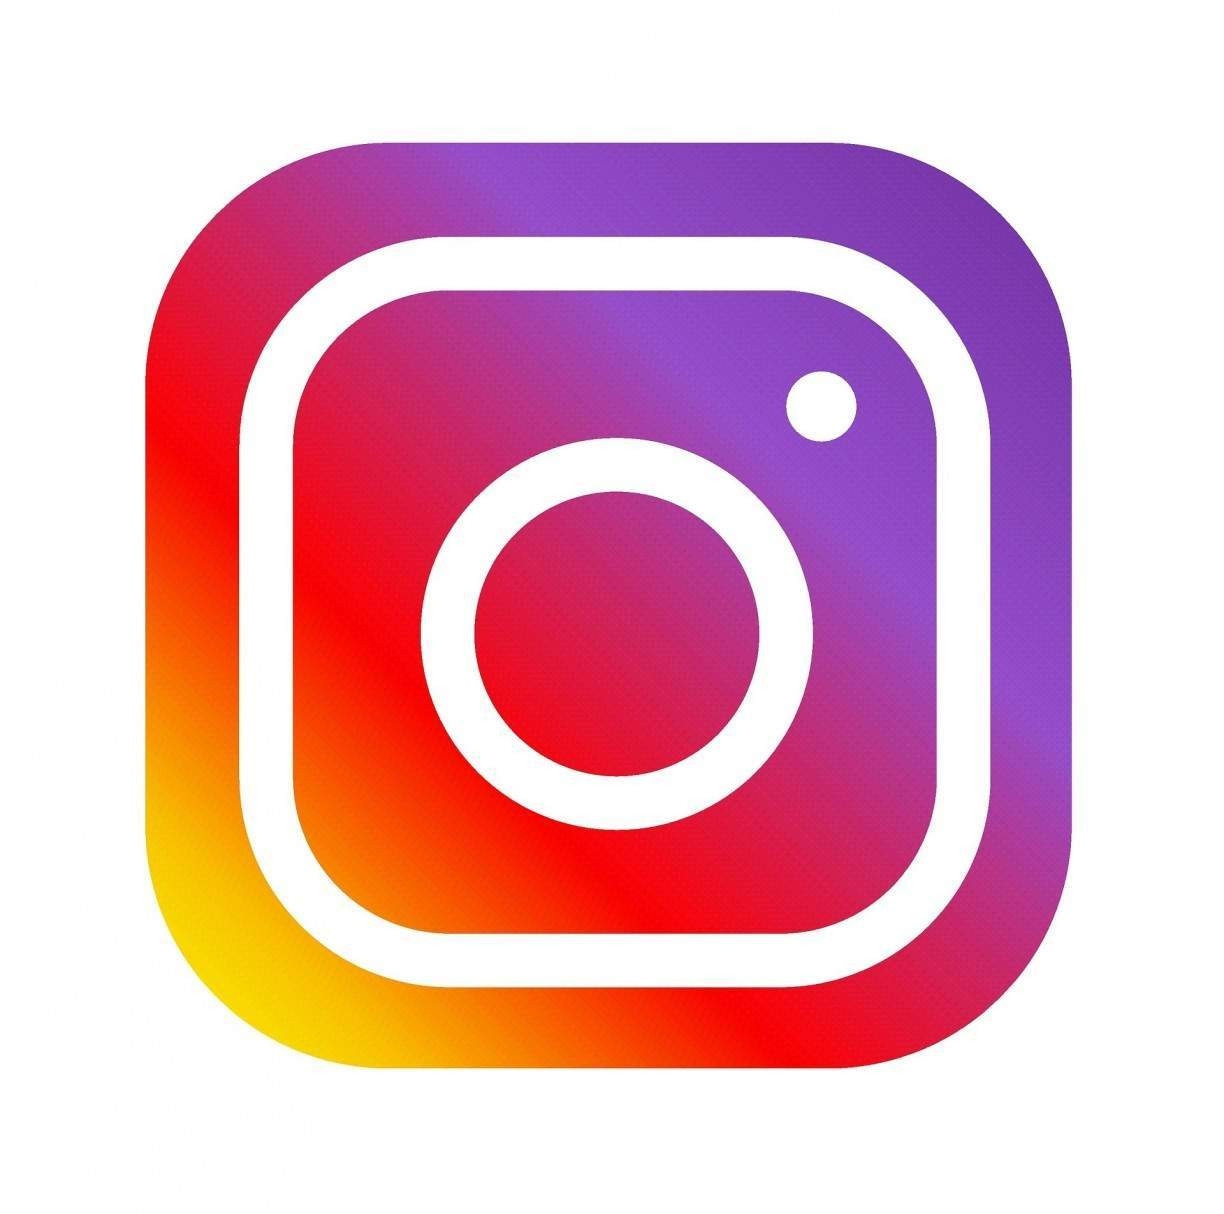 Instagram bugado? Usuários relatam problemas na rede social nesta terça, 29/03